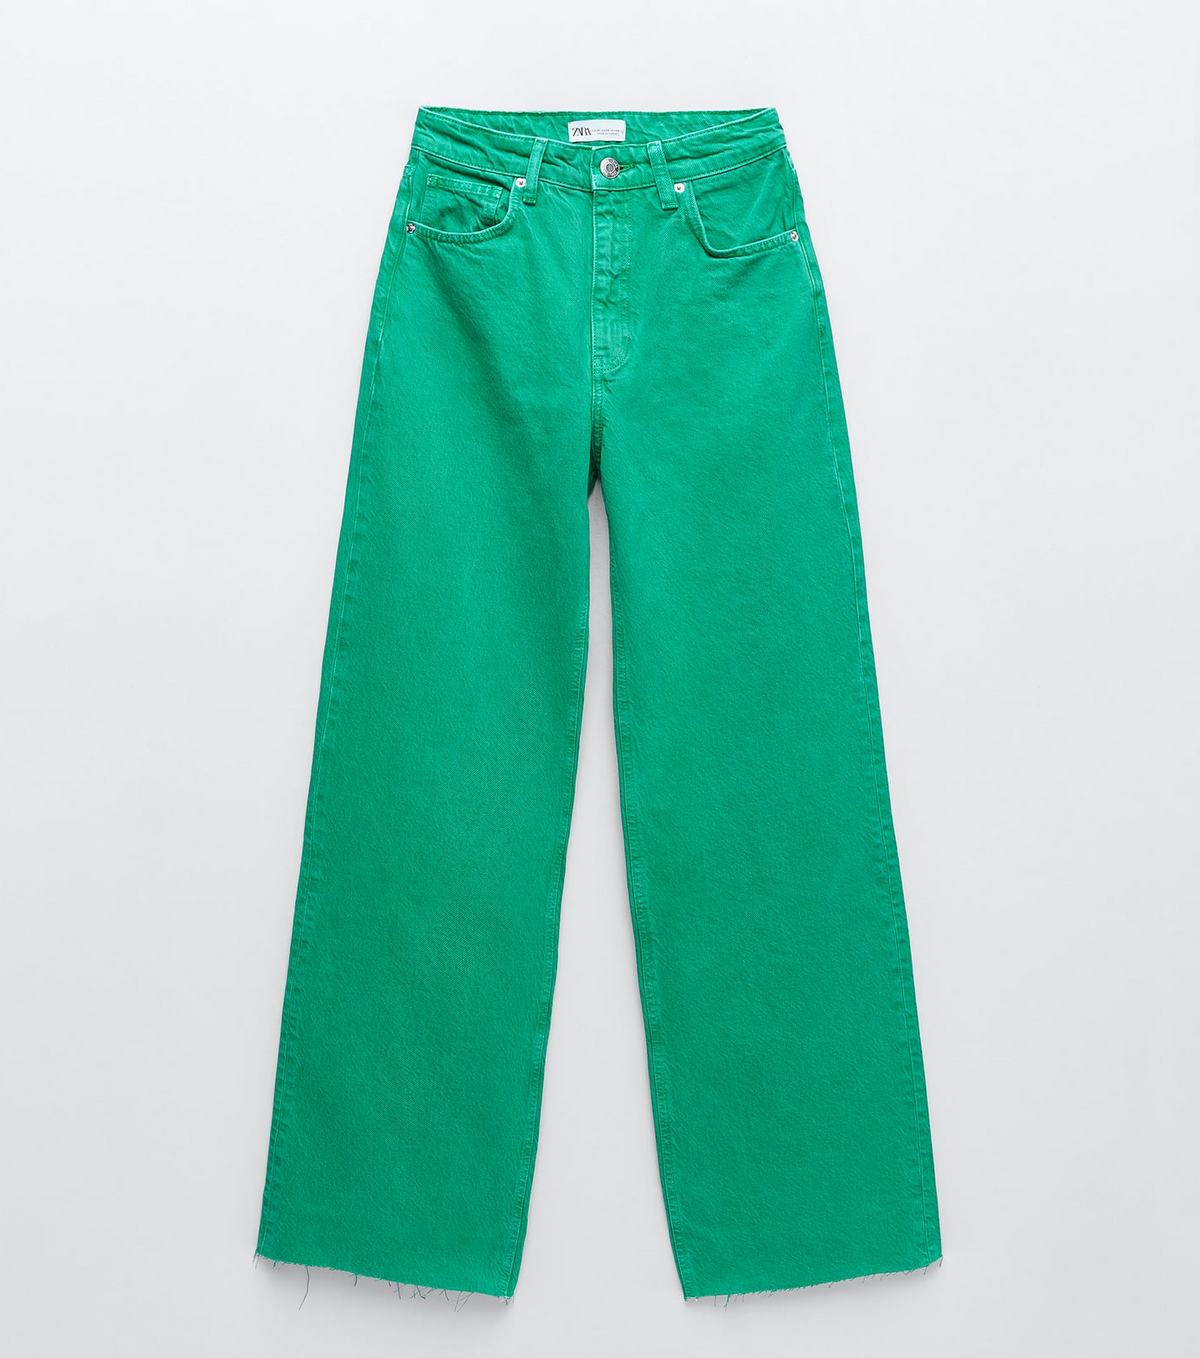 Zara confirma que pantalones son la tendencia definitiva 2021 y los lleva a otro nivel con sus atrevidos estampados